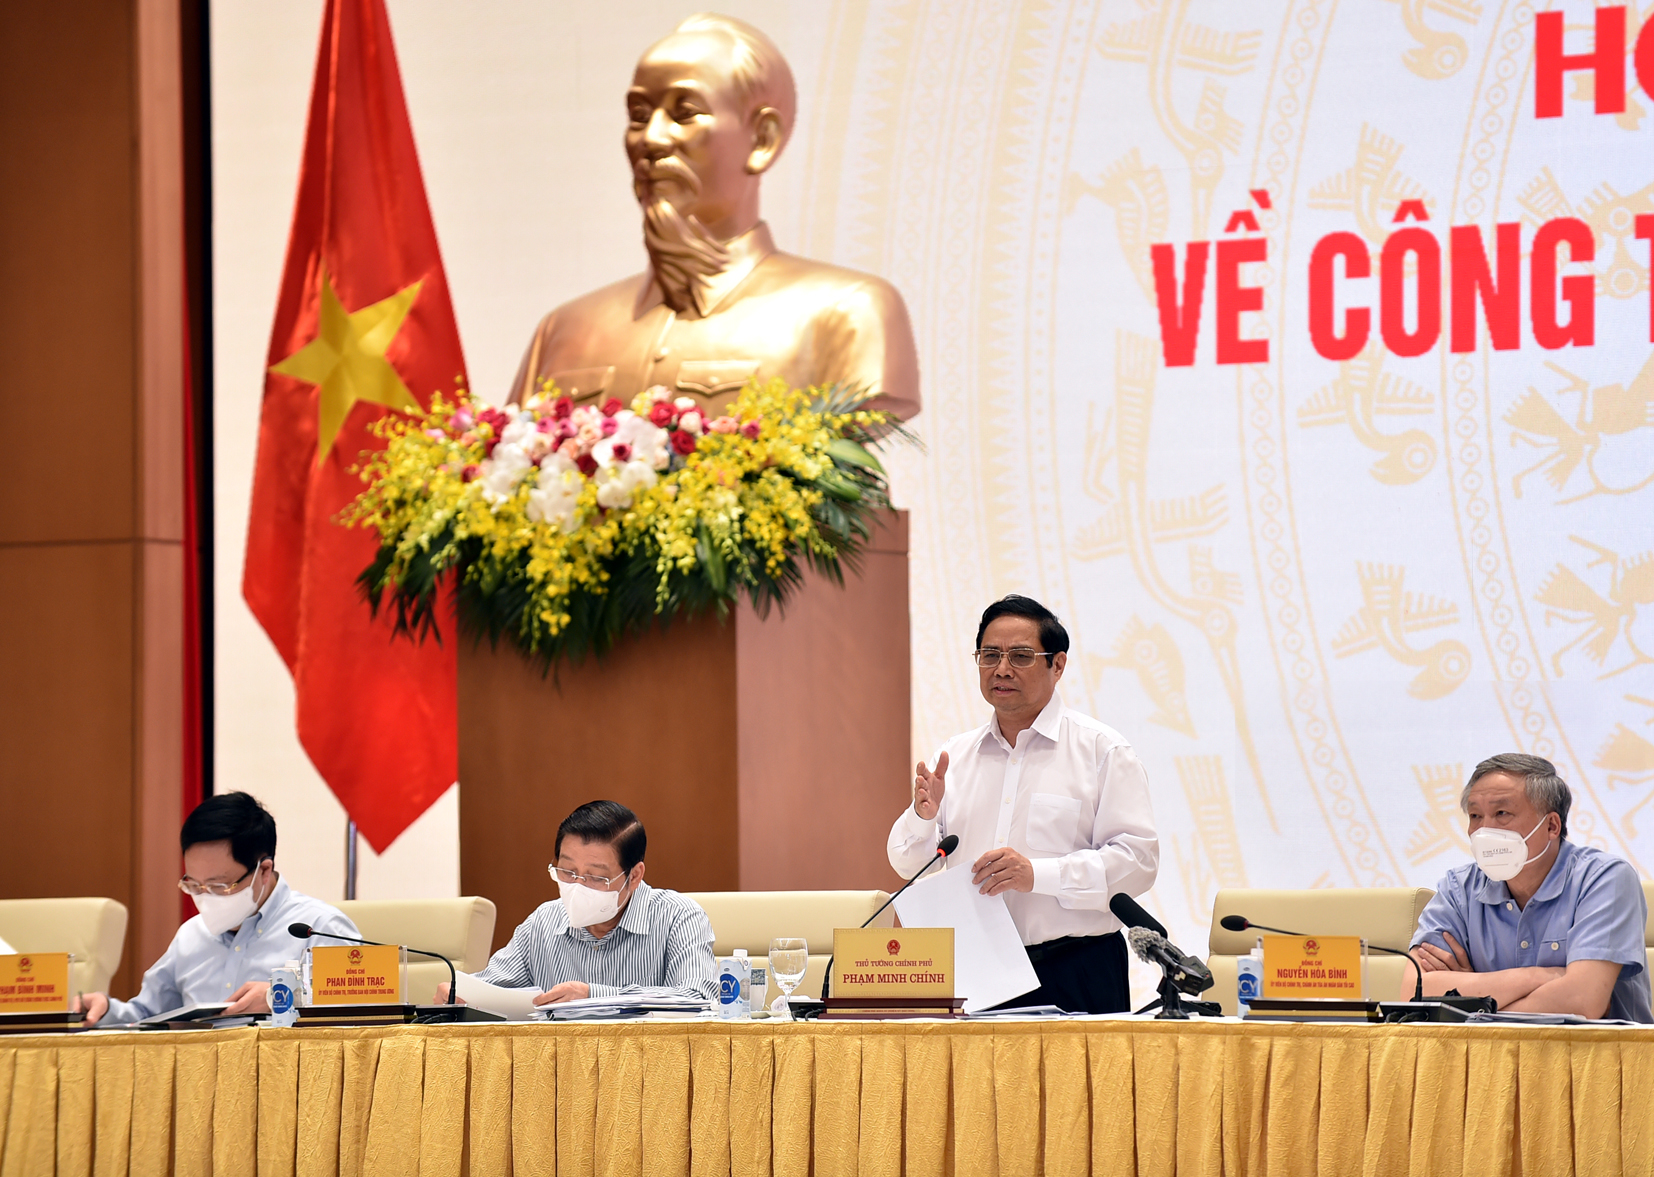 Đến năm 2024, Việt Nam đã xây dựng thành công cờ pháp mới, đồng thời nâng cao tinh thần yêu nước và nhân dân trong thời đại mới. Những hình ảnh về cờ pháp mới sẽ đem lại tự hào và sự kiêu hãnh cho toàn dân.